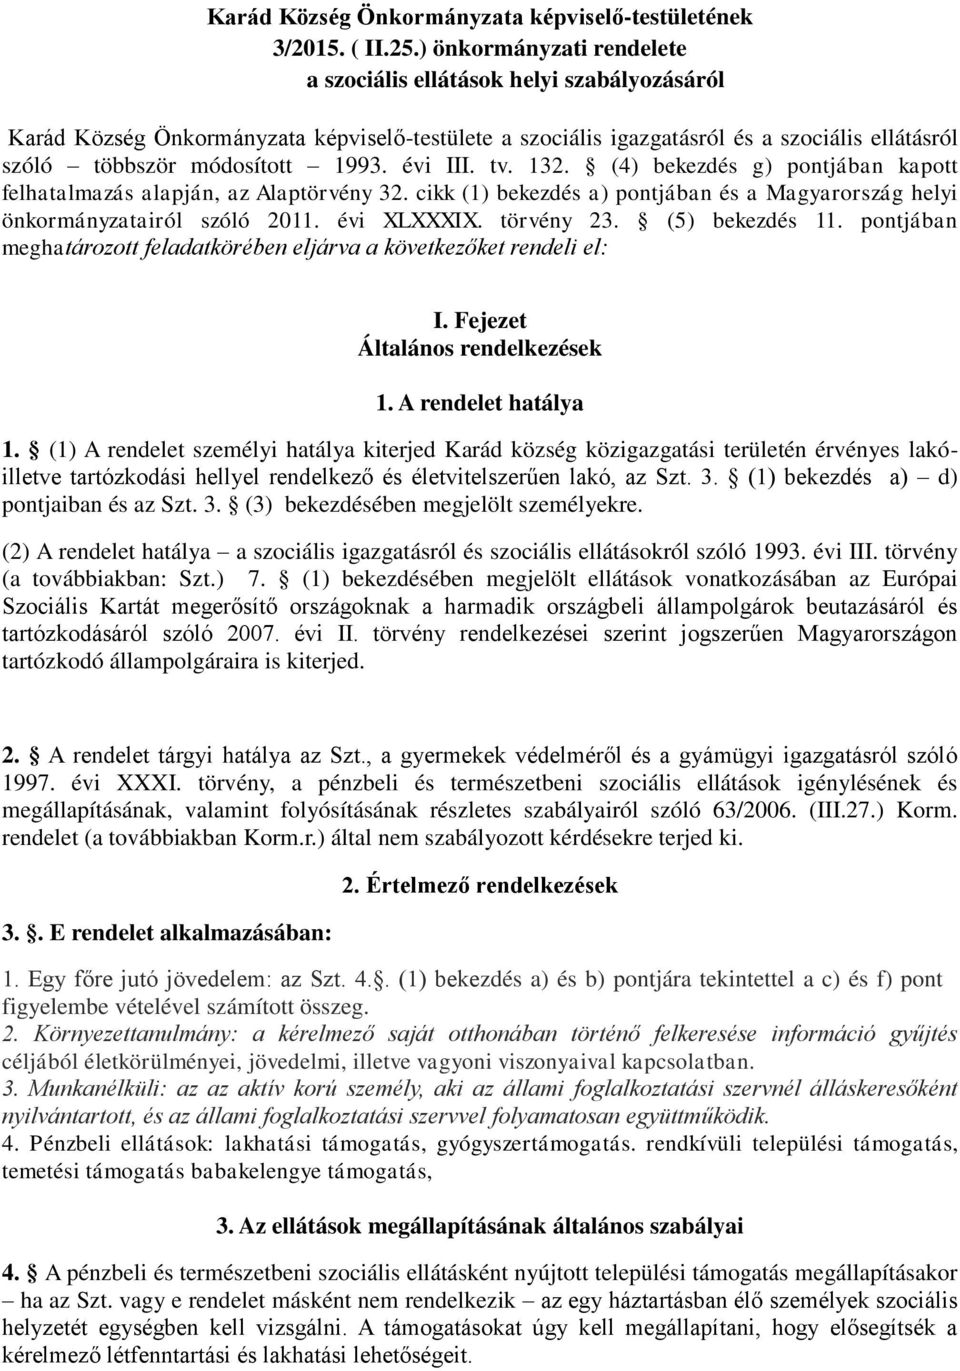 évi III. tv. 132. (4) bekezdés g) pontjában kapott felhatalmazás alapján, az Alaptörvény 32. cikk (1) bekezdés a) pontjában és a Magyarország helyi önkormányzatairól szóló 2011. évi XLXXXIX.